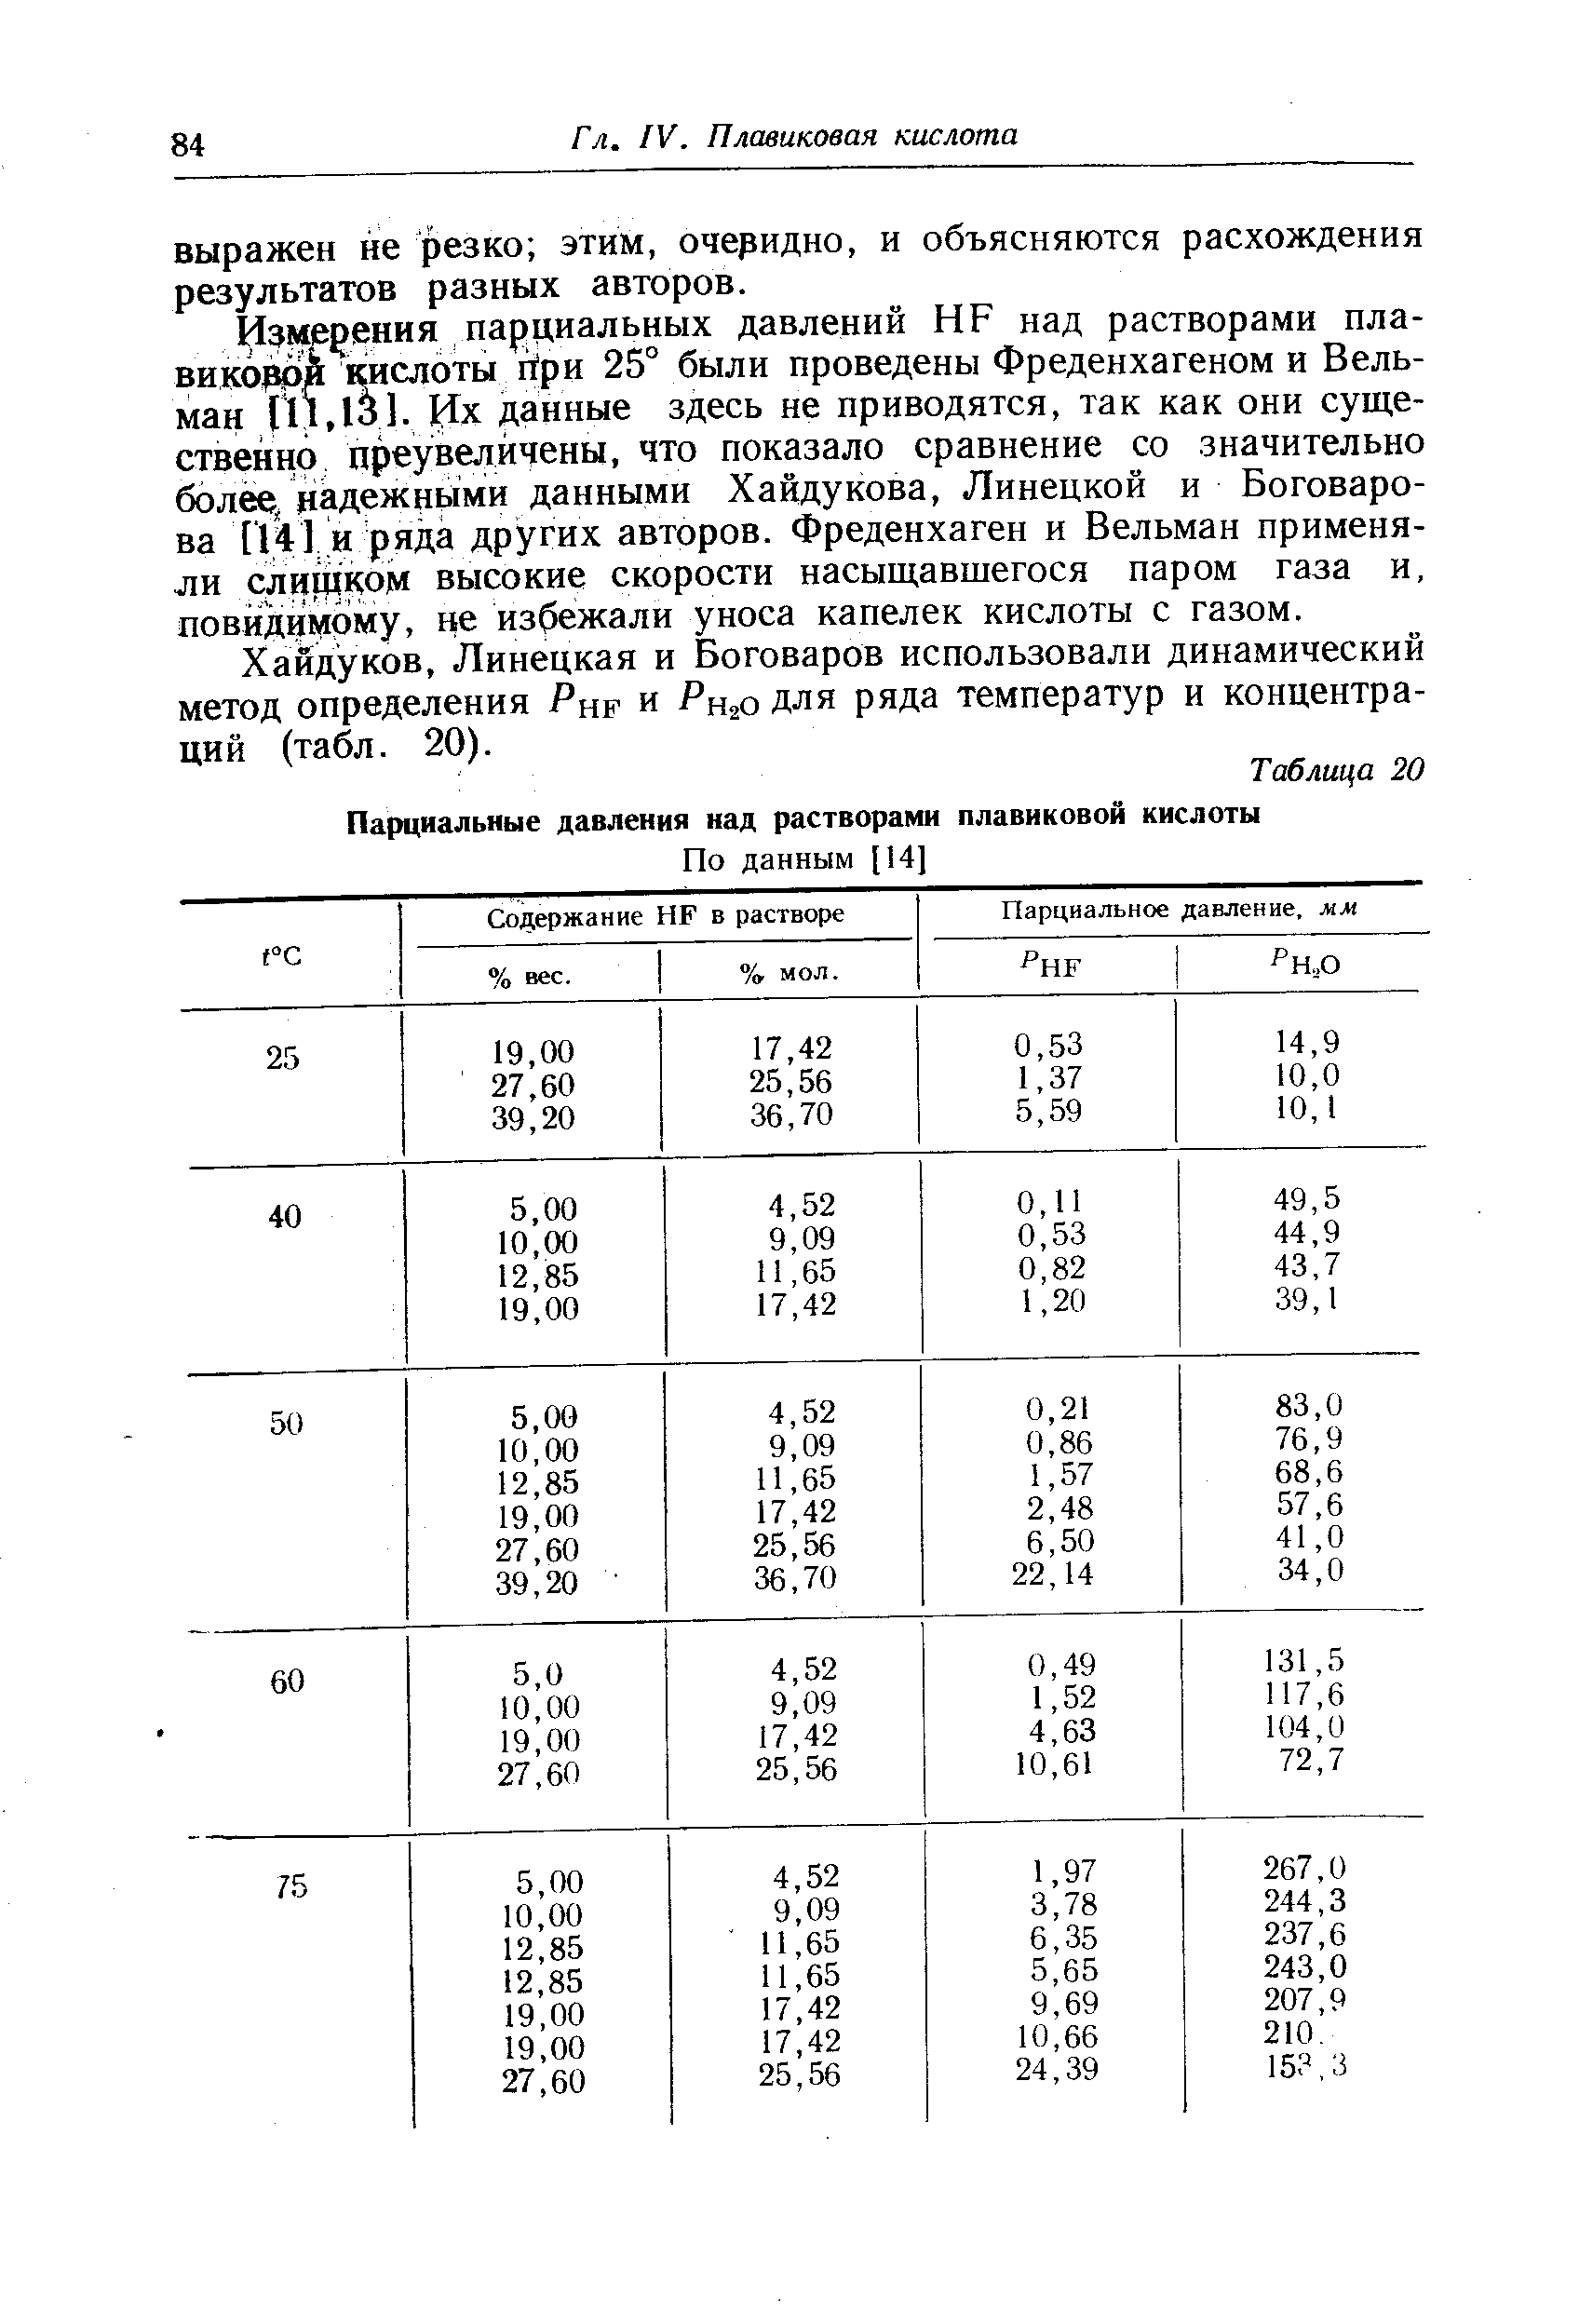 Хайдуков, Липецкая и Боговаров использовали динамический метод определения Рнр и Рщо для ряда температур и концентраций (табл. 20).